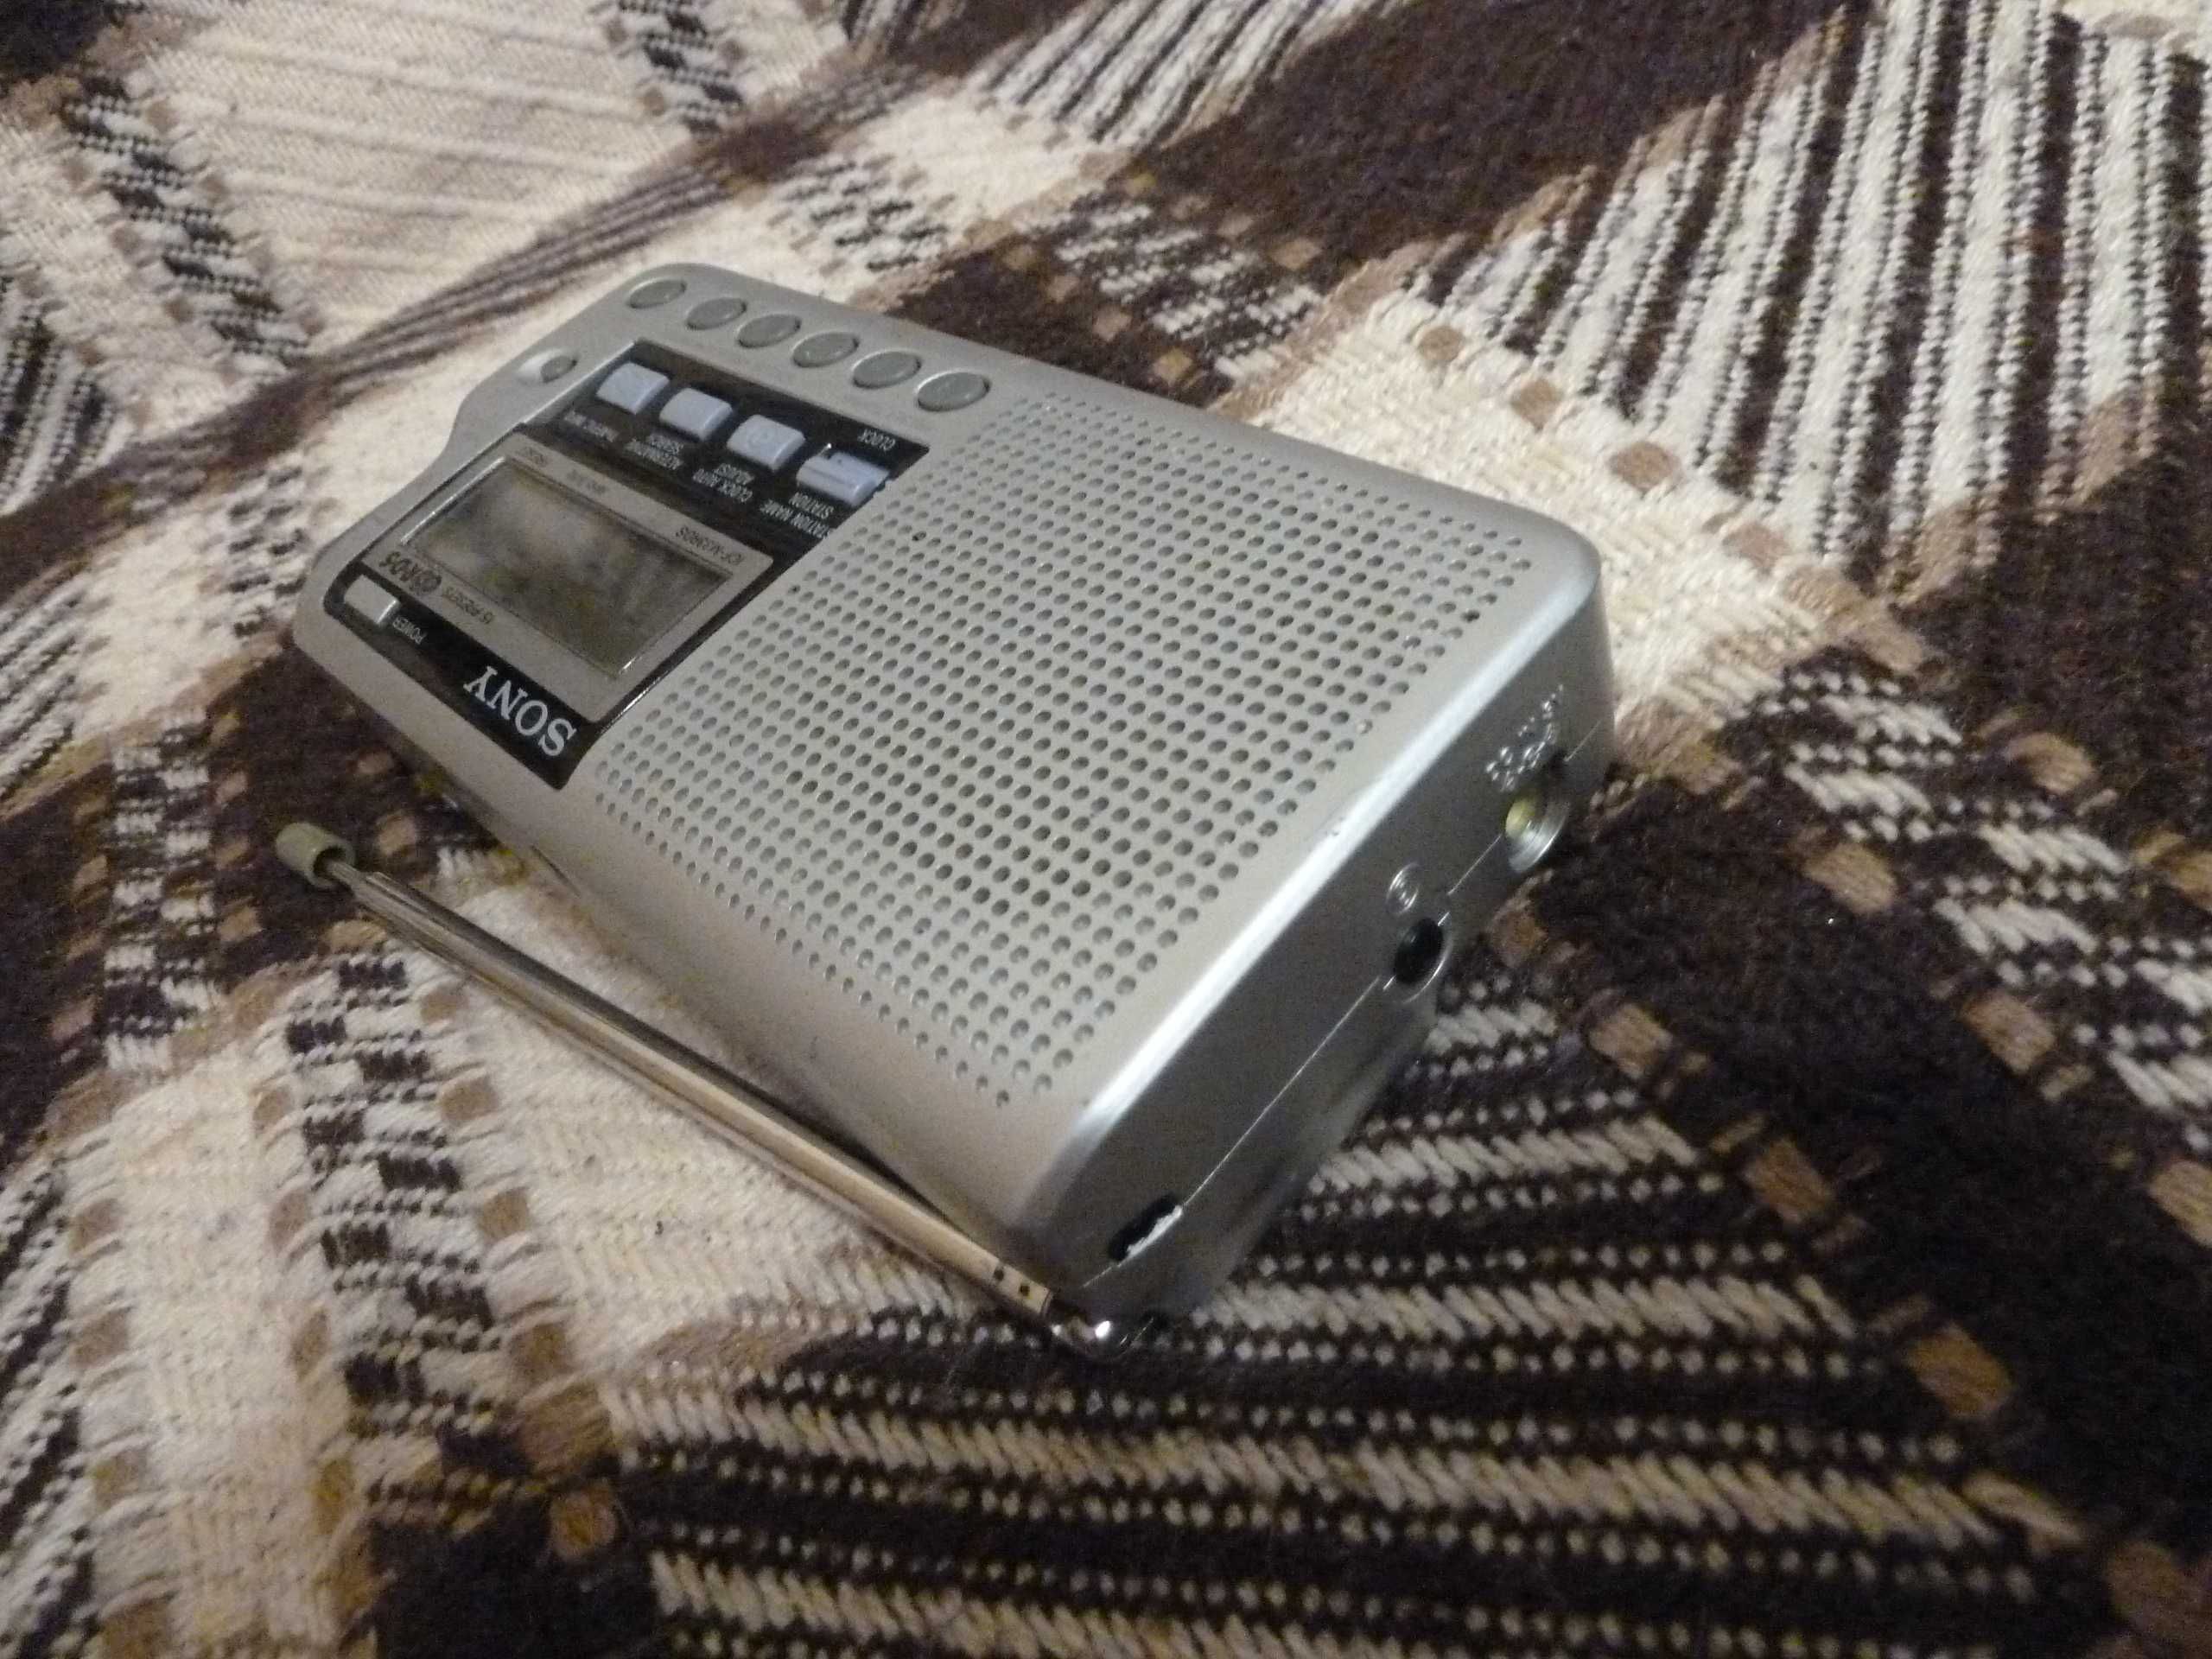 Małe radio Sony, RDS, AM/FM, świetna jakość. SONY ICF M33.